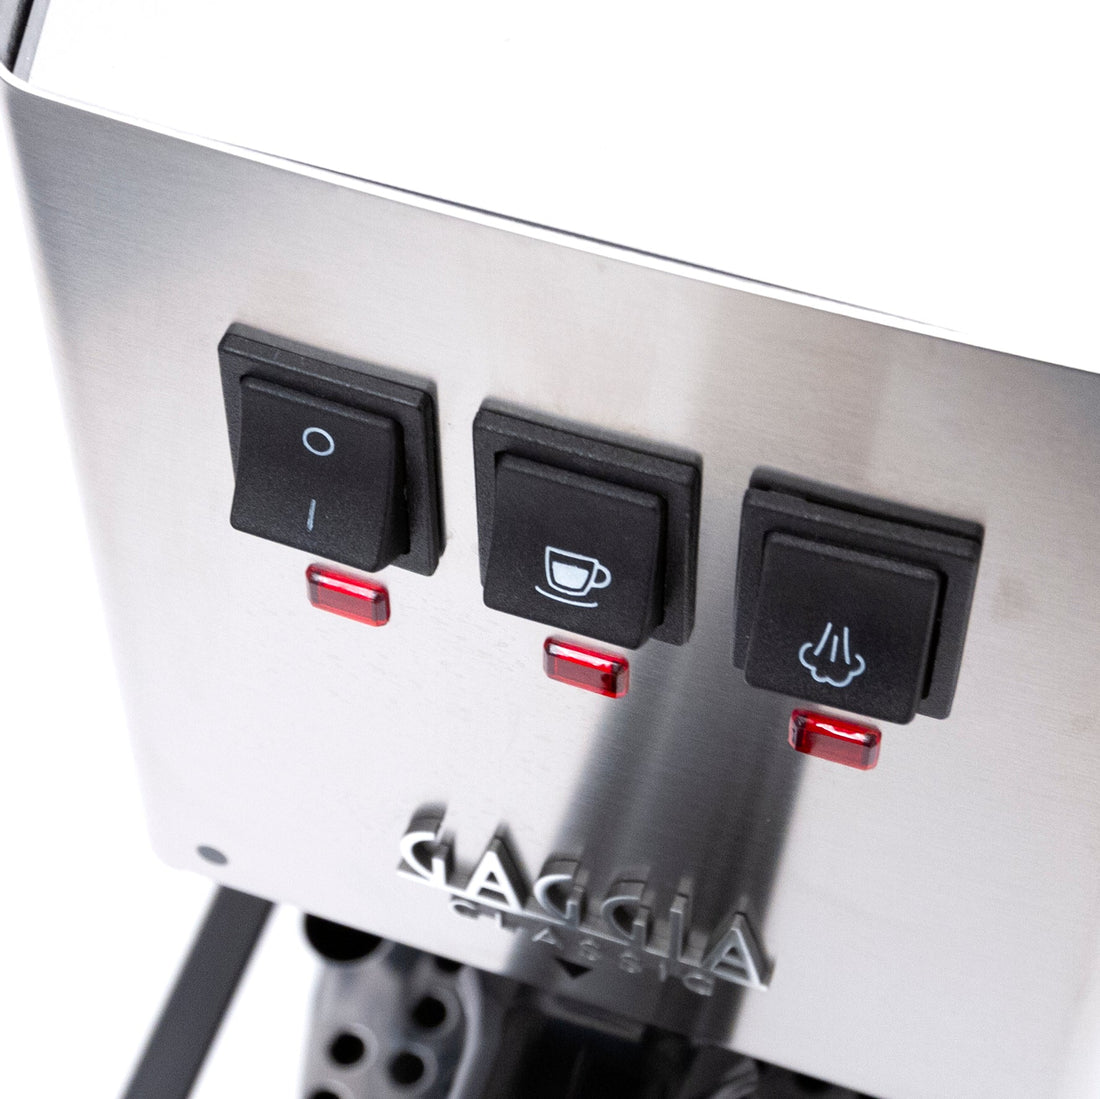 Gaggia Classic Evo Pro Semi-Automatic Espresso Machine with Blackened Oak